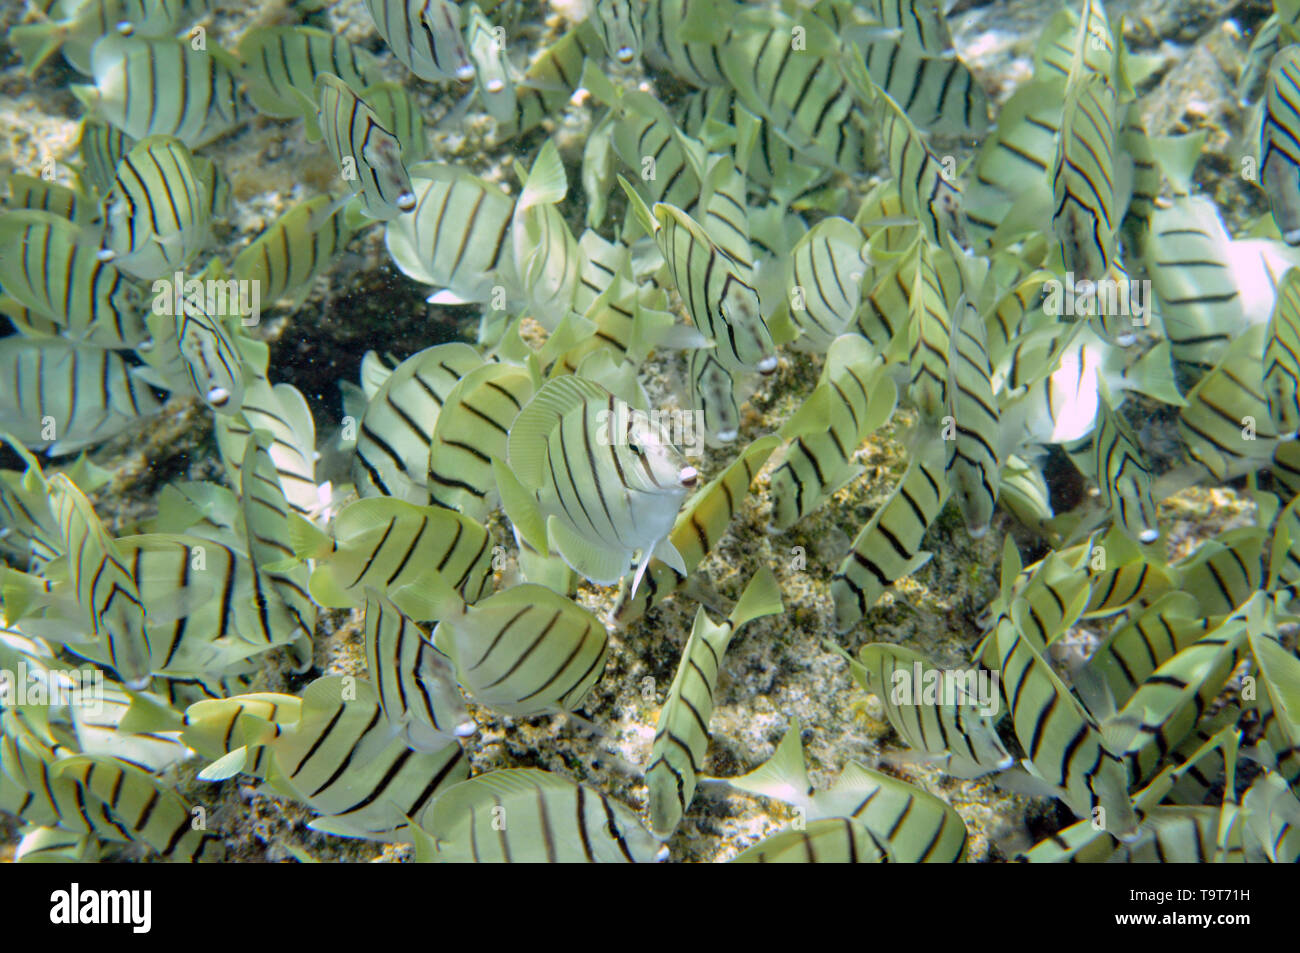 Agrégation de condamner ou tang, Acanthurus triostegus manini, se nourrissant d'algues, les mares d'Waiopae, Kapoho, Big Island, Hawaii, USA Banque D'Images